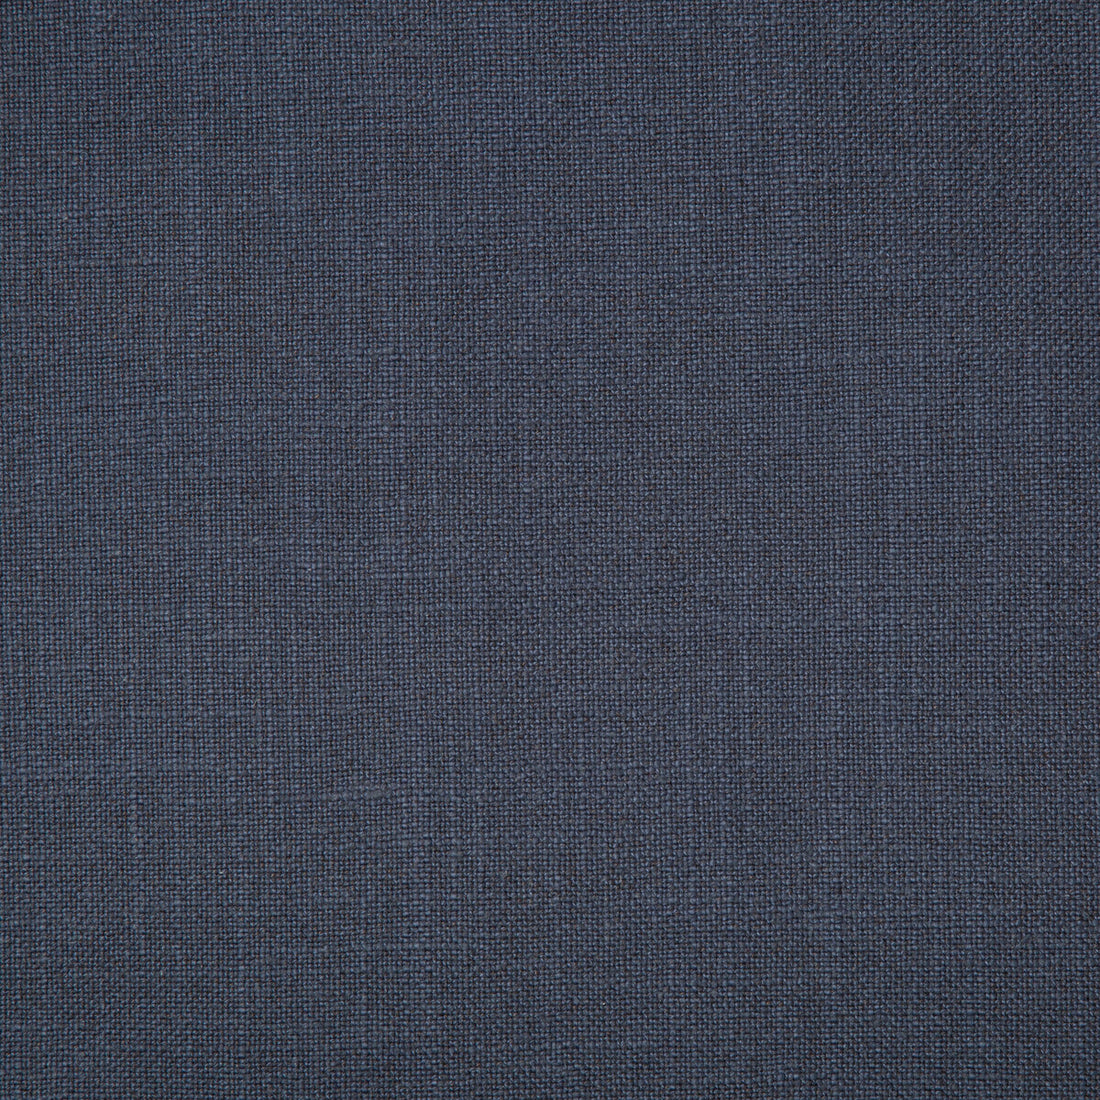 Kravet Basics fabric in 35783-52 color - pattern 35783.52.0 - by Kravet Basics